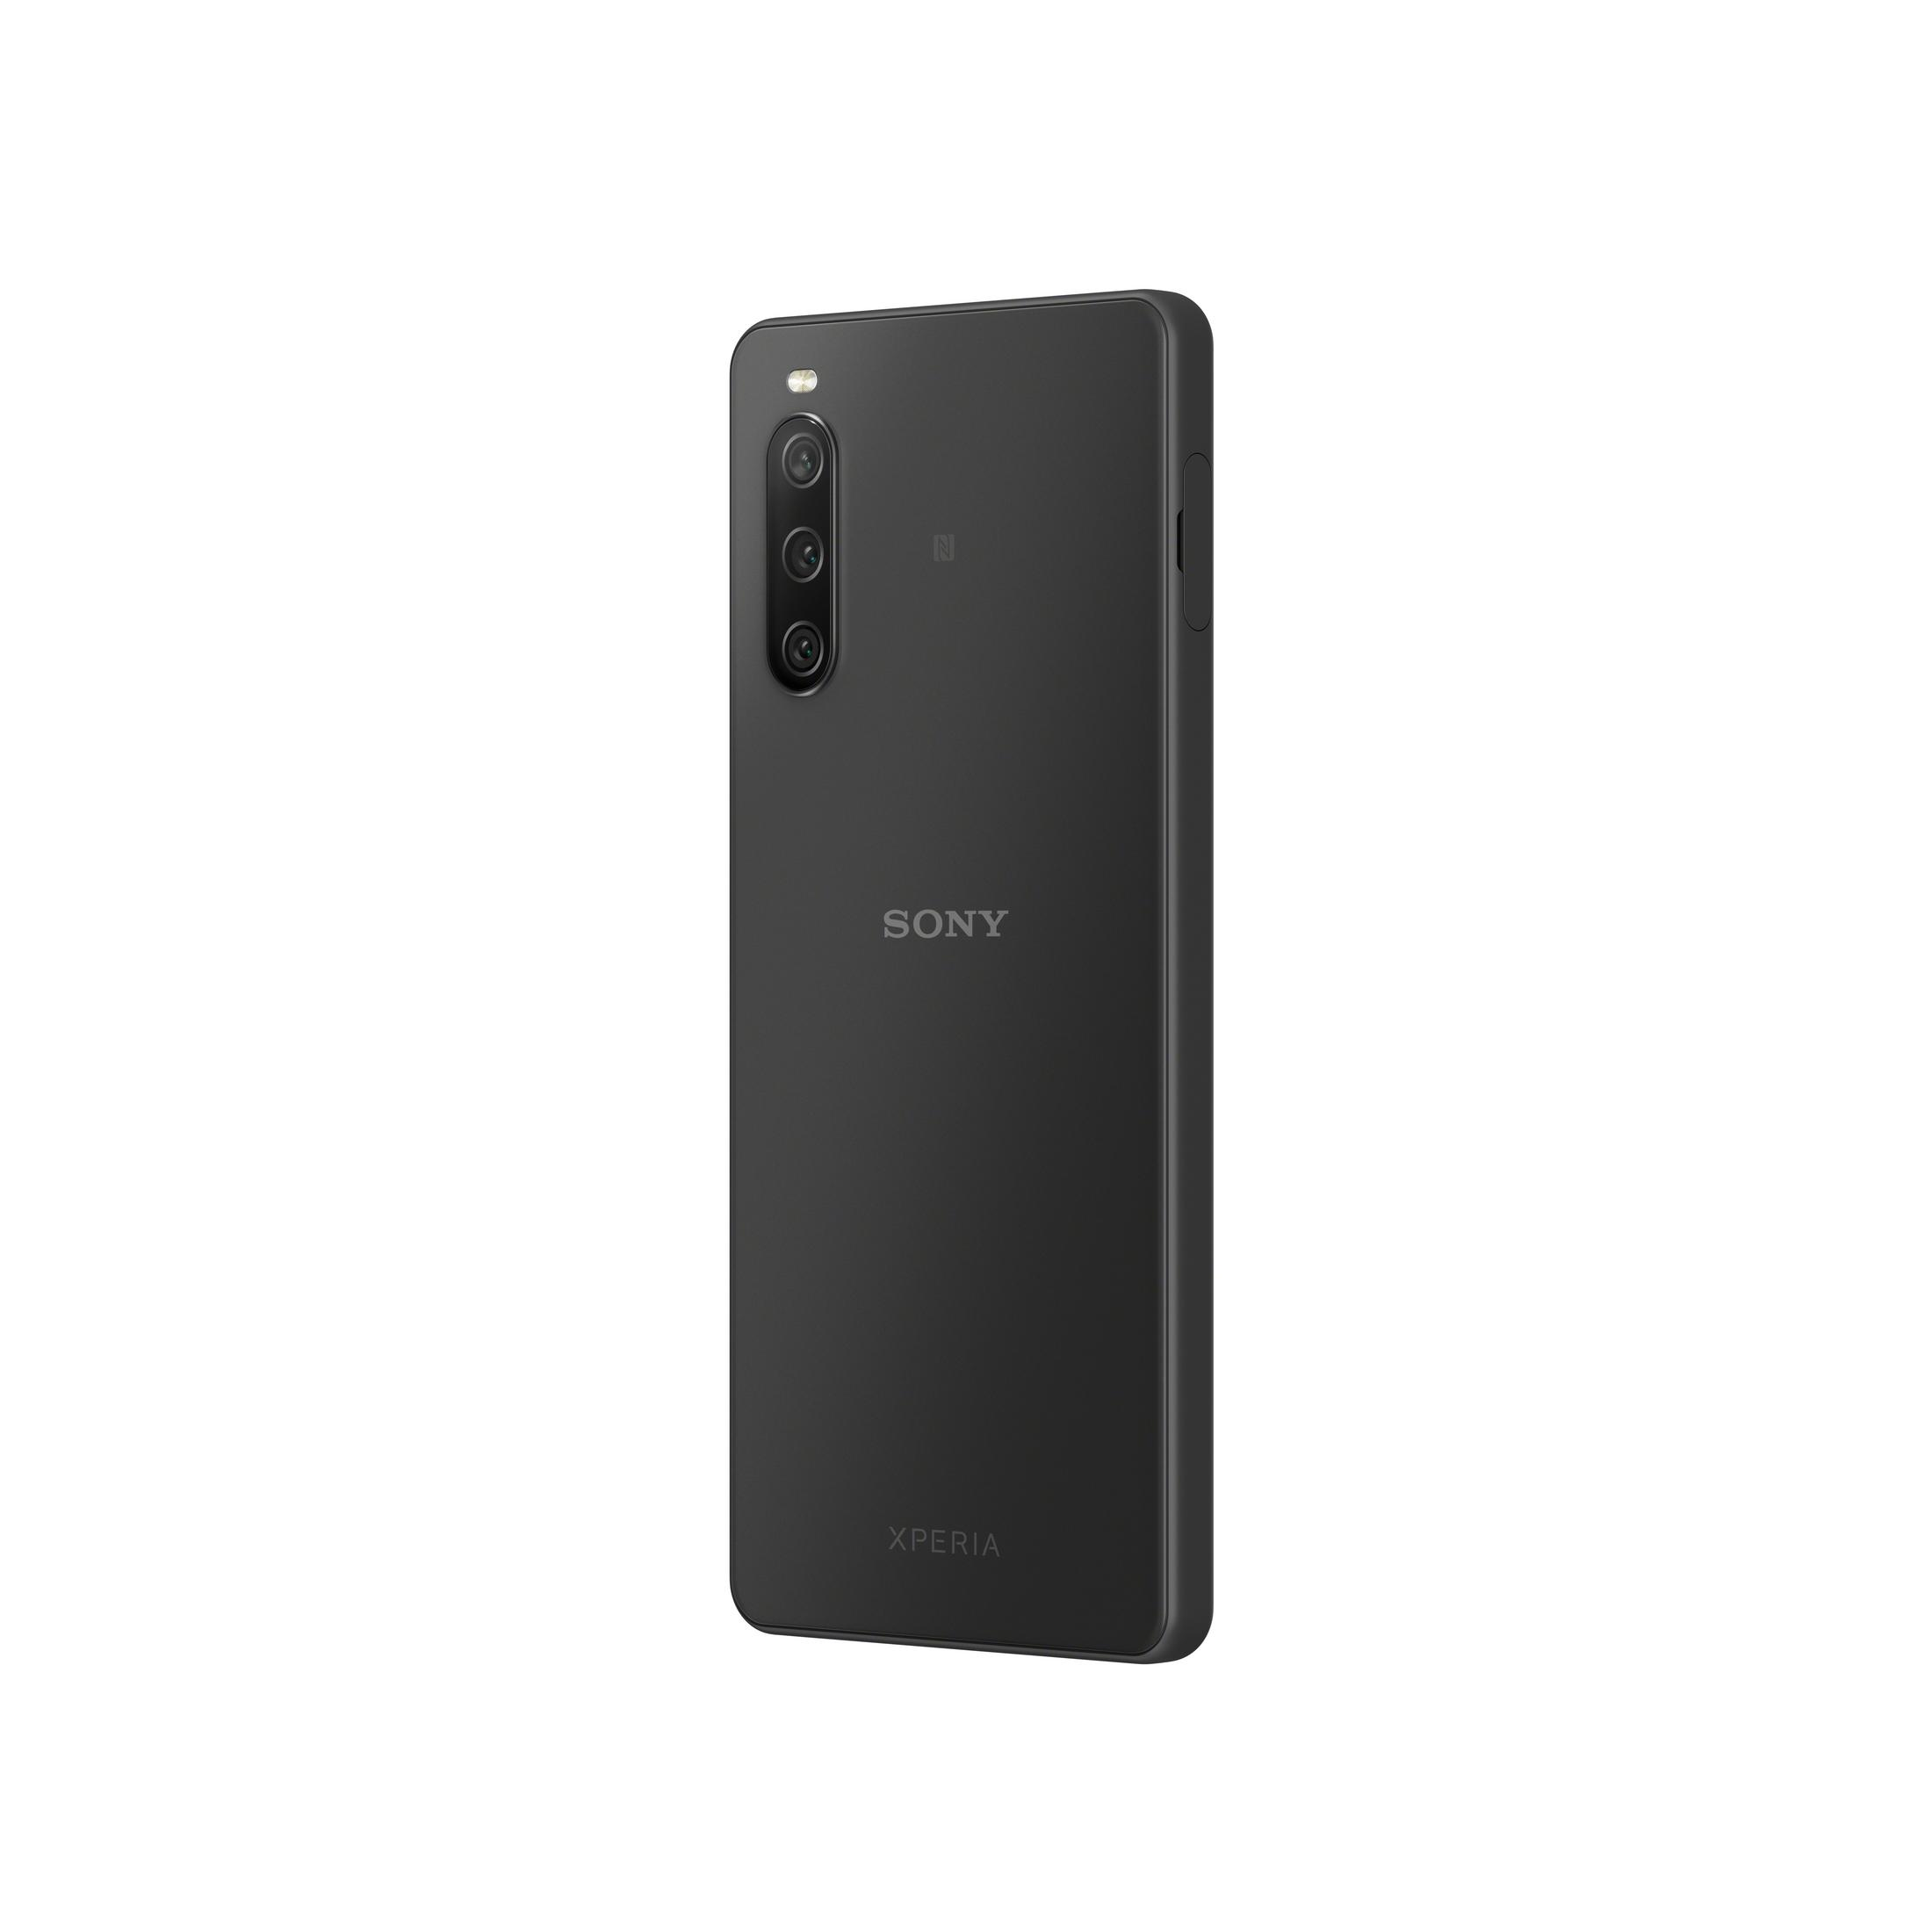 128 SONY SIM IV 128GB Dual GB 10 Black BLACK XPERIA